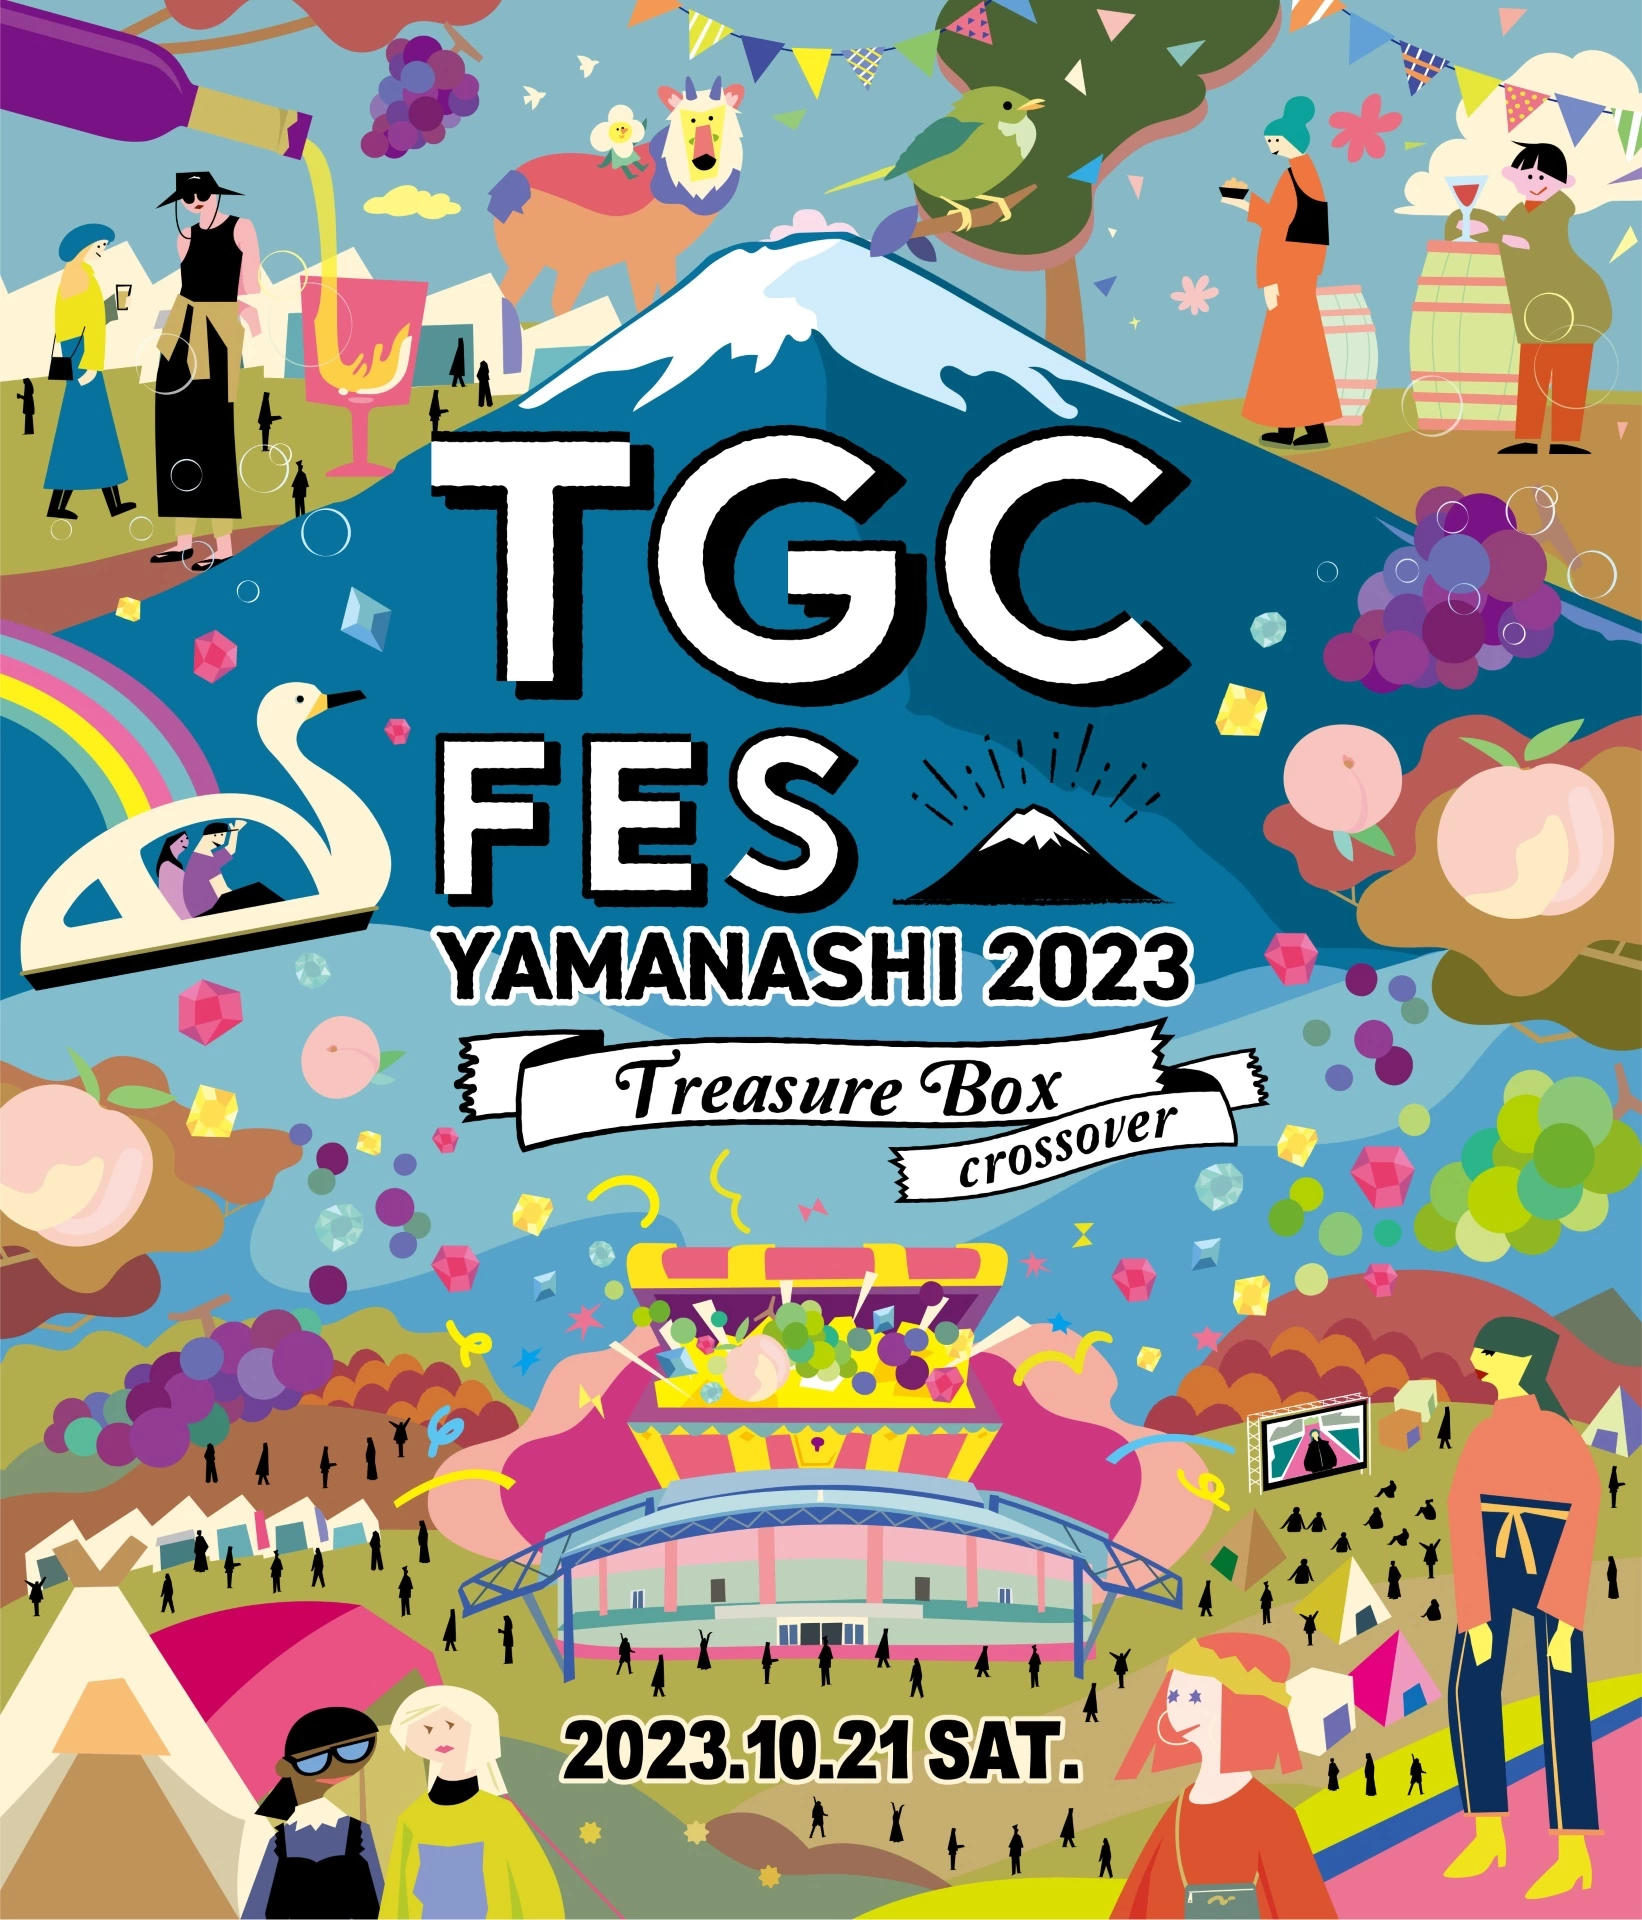 TGC FES YAMANASHI 2023